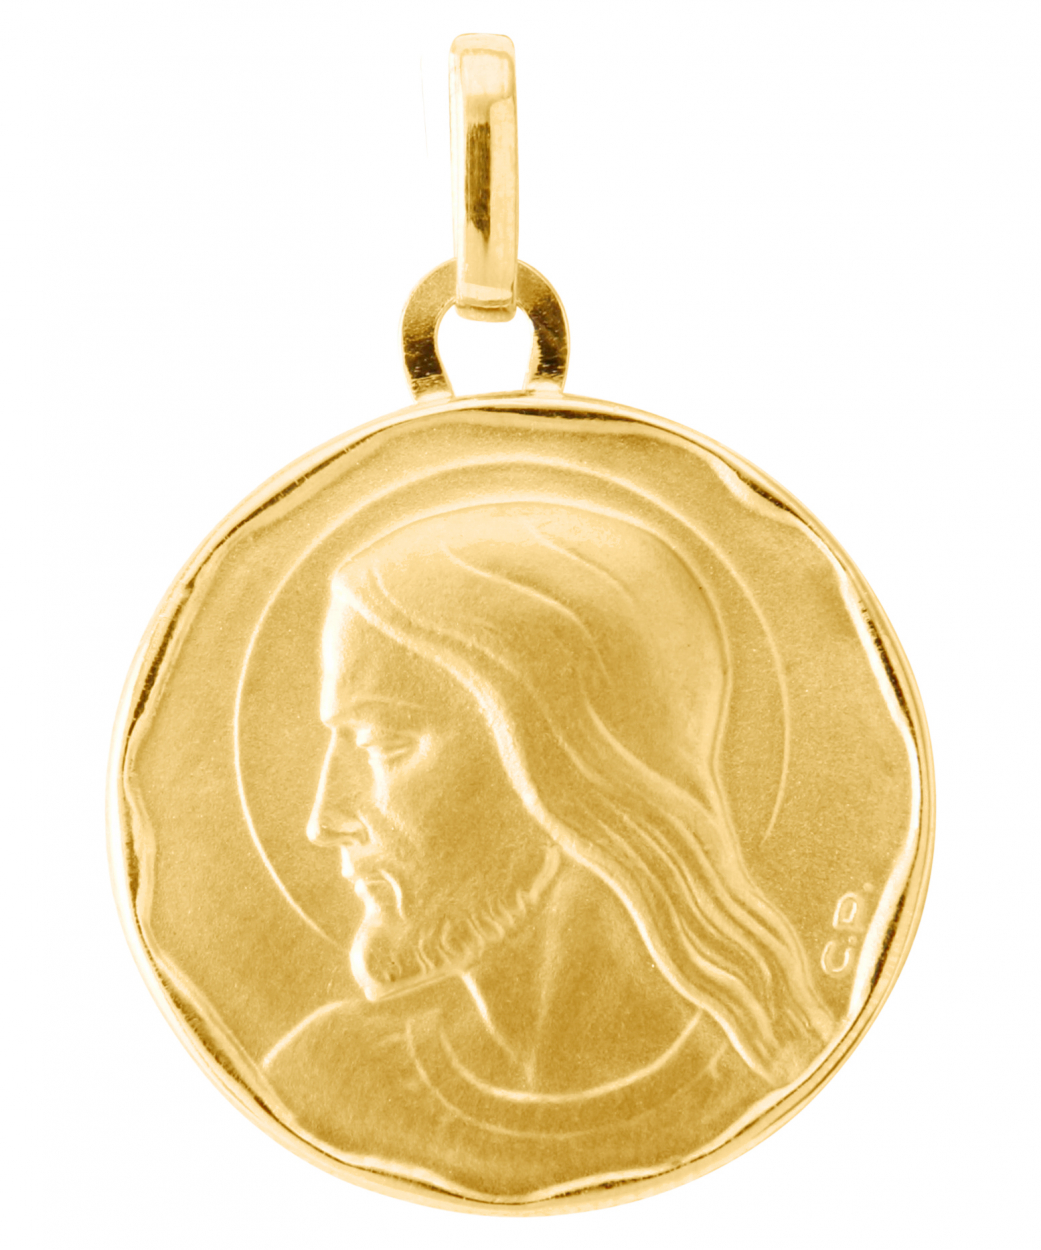 Medaille Christ en Or Jaune 750 (17mm) - Bijoux Femme ou Enfant